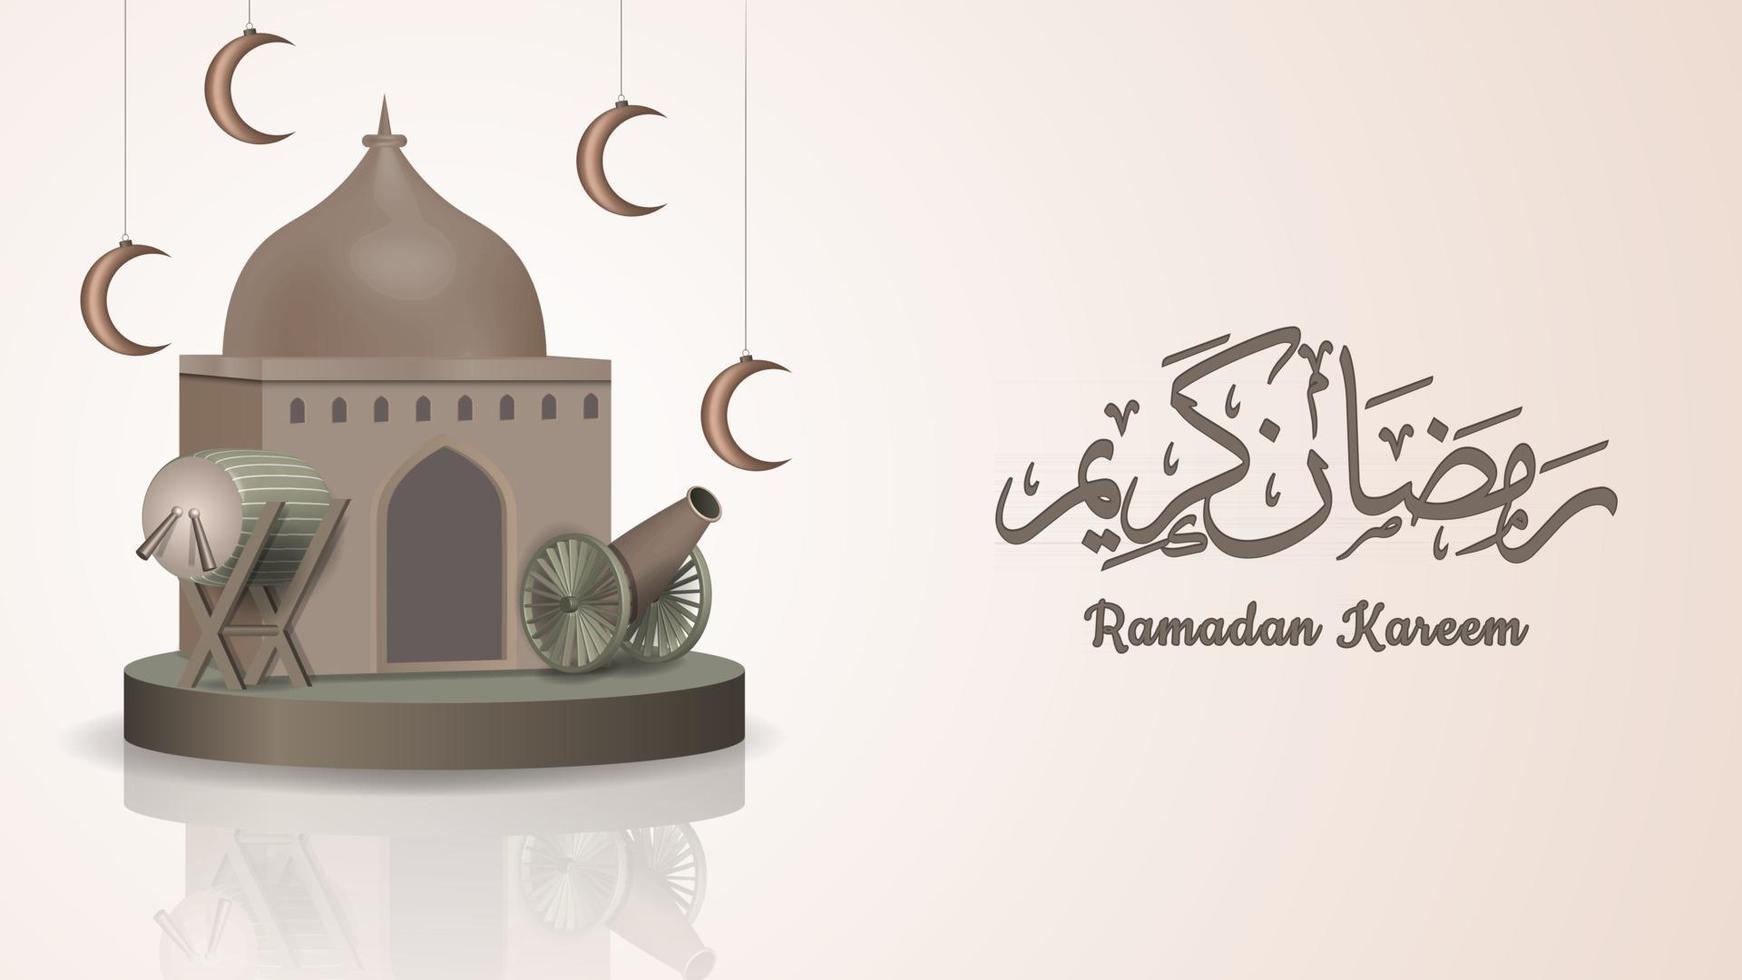 Ramadan Kareem background vector